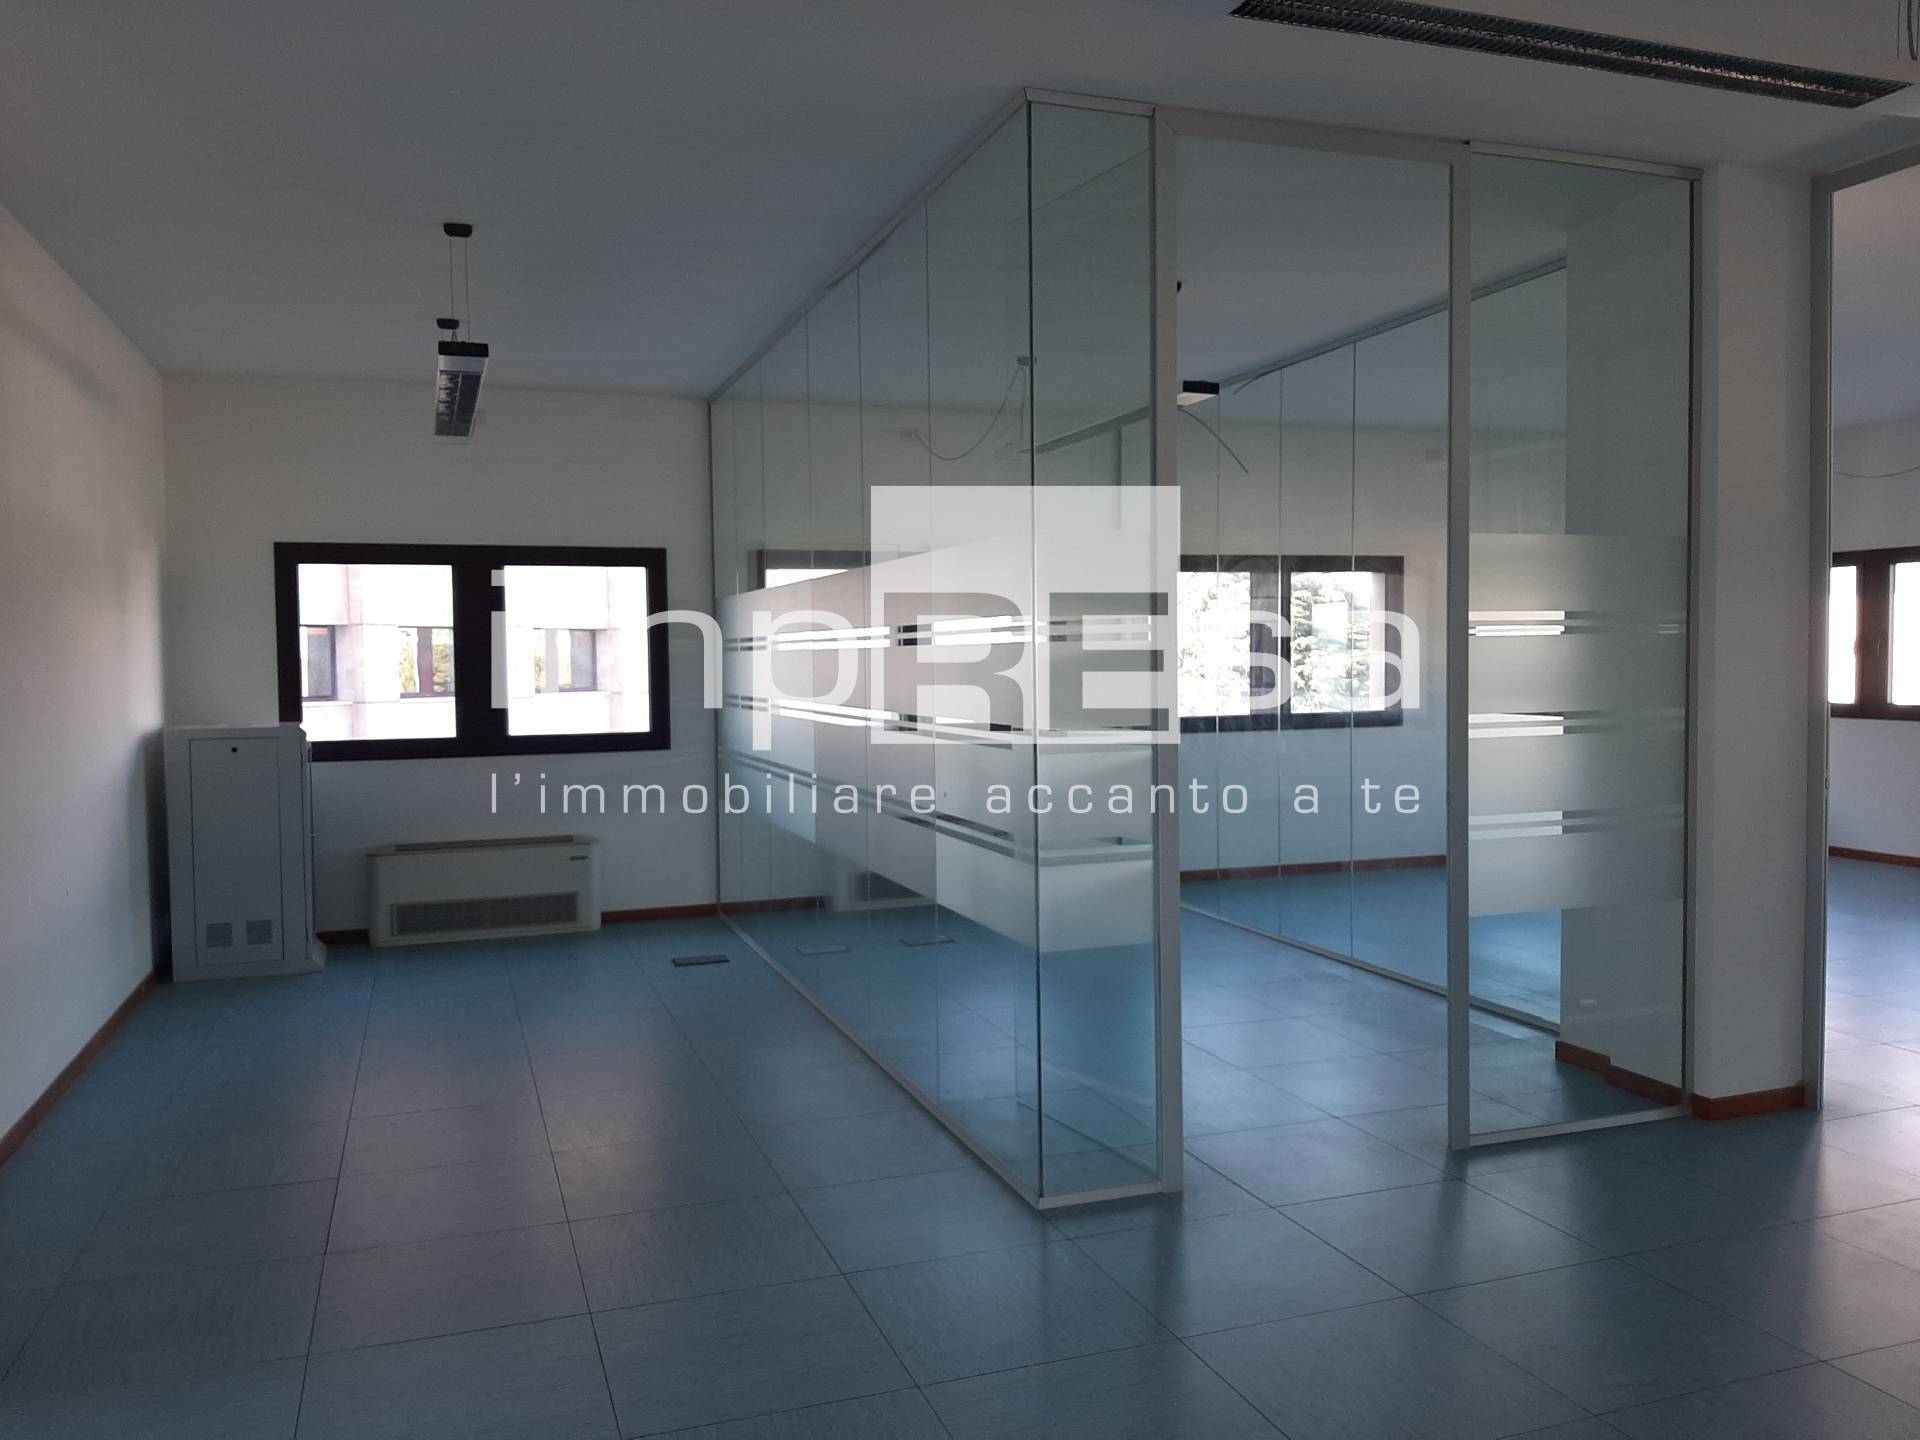 Ufficio / Studio in vendita a Treviso, 9999 locali, zona ellana, prezzo € 290.700 | PortaleAgenzieImmobiliari.it